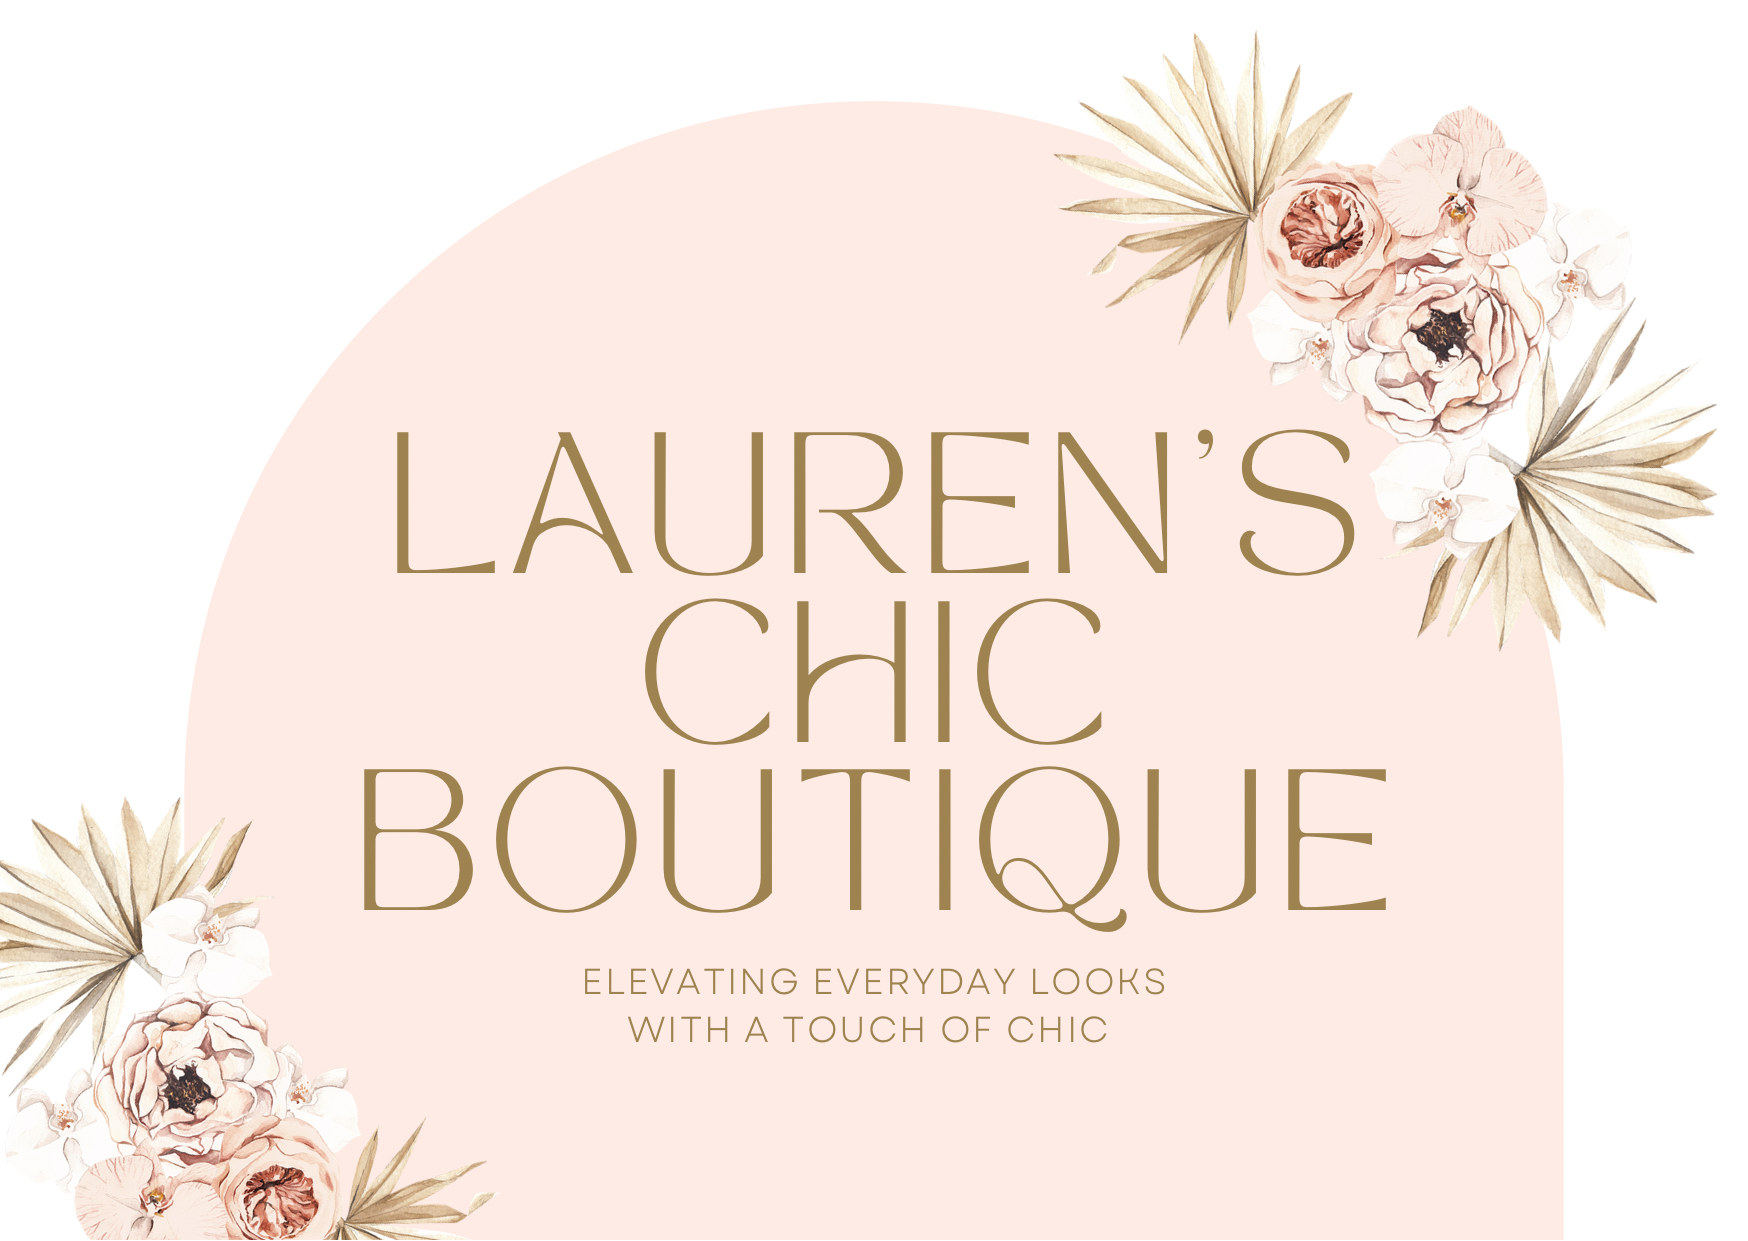 Lauren’s Chic Boutique